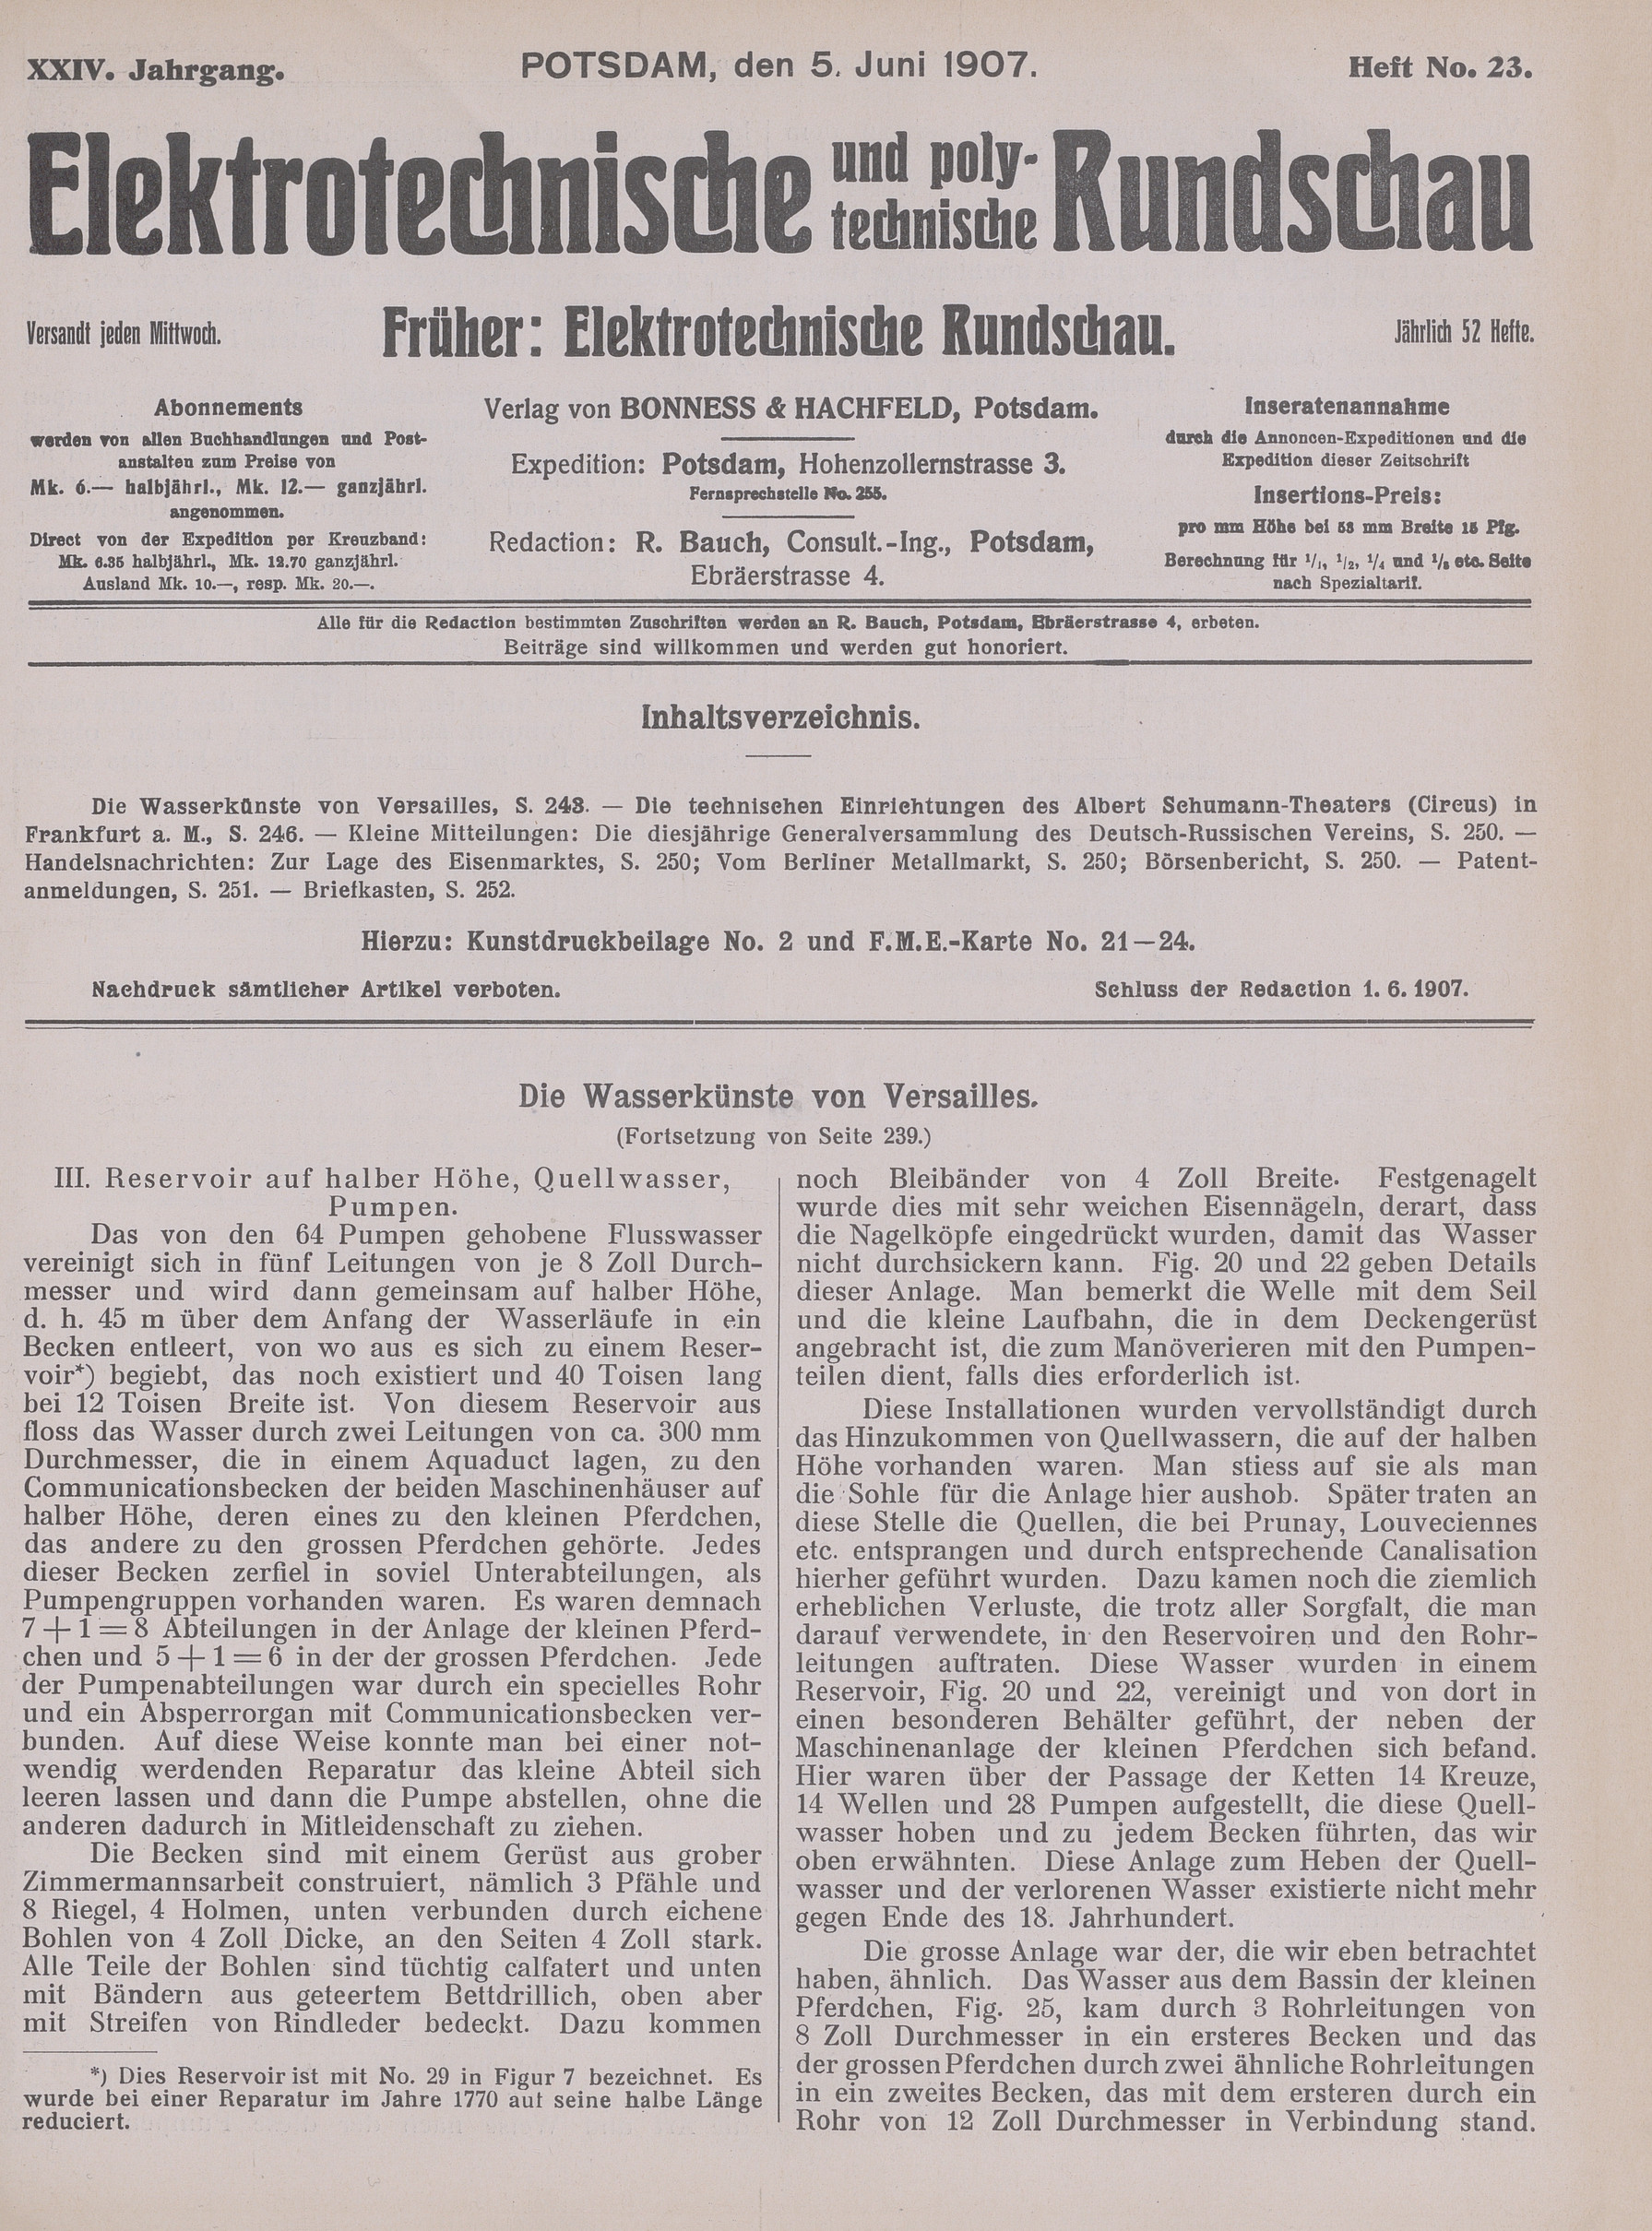 Elektrotechnische und polytechnische Rundschau, XXIV. Jahrgang, Heft No. 23